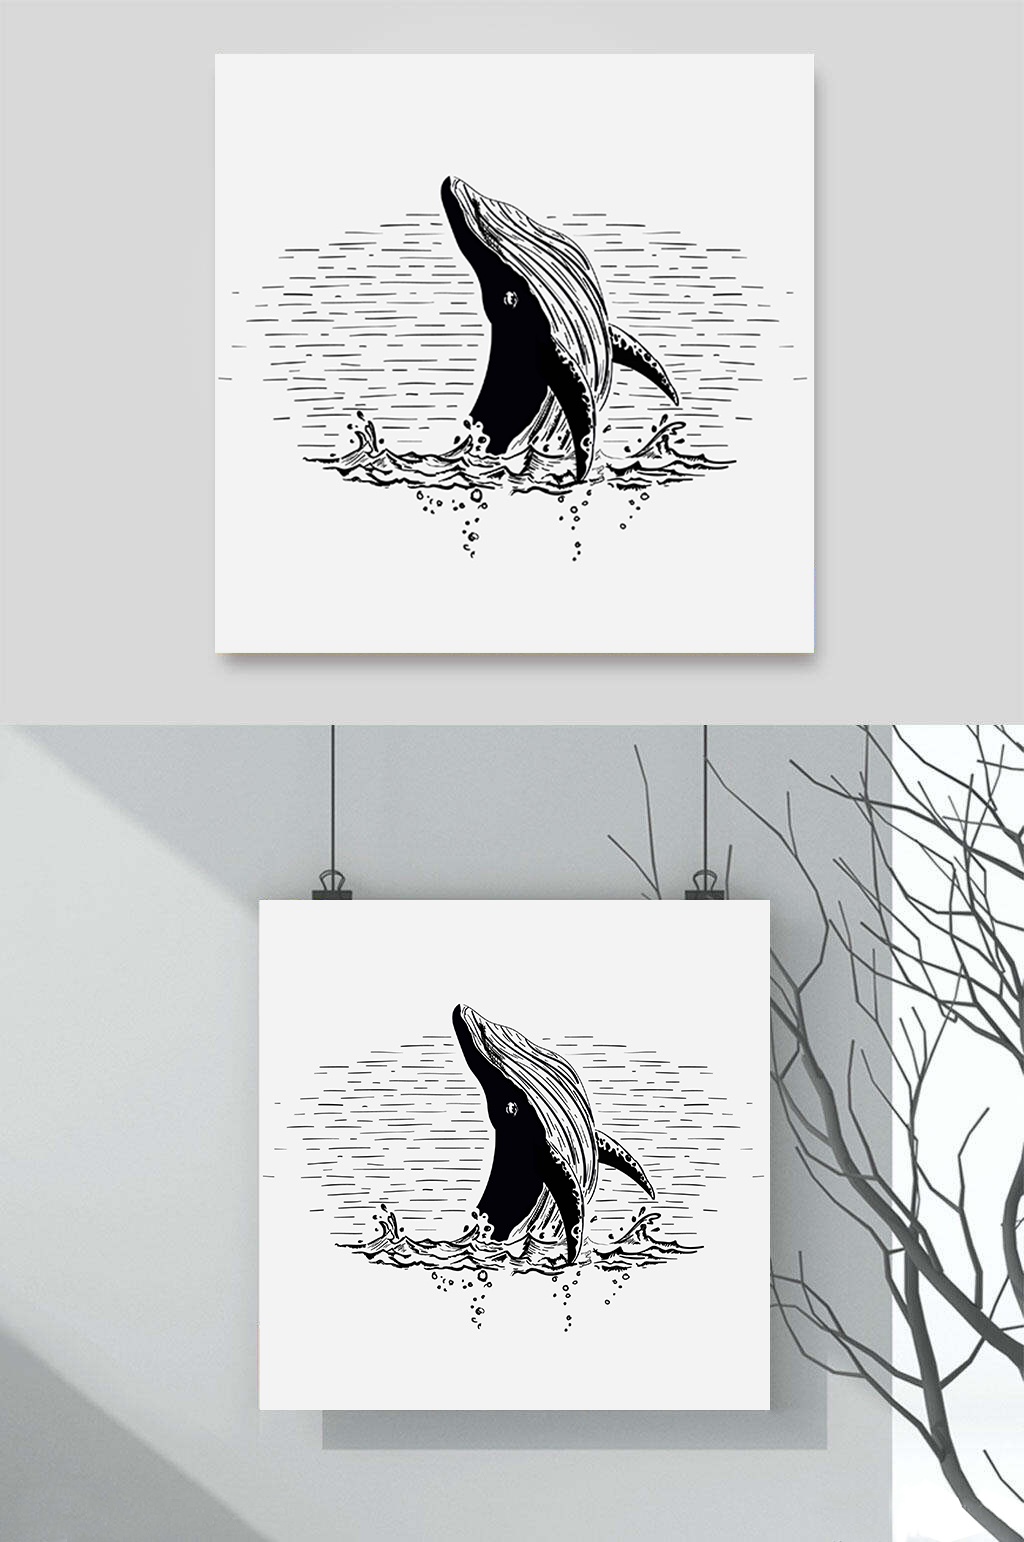 鲸鱼跃出水面的素描画图片